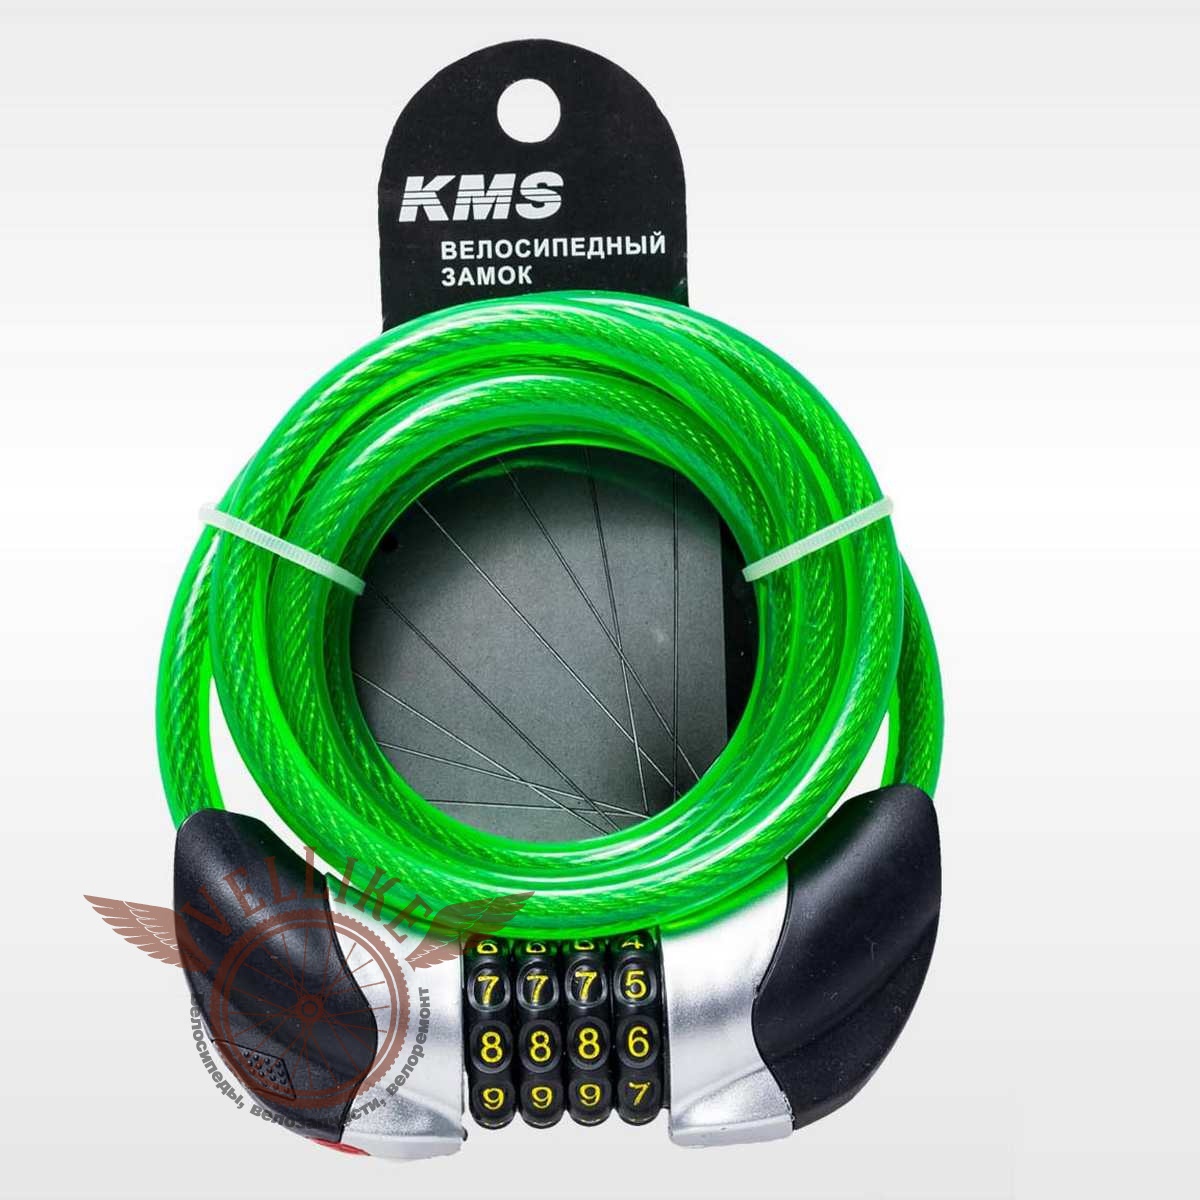 Велозамок "KMS", трос Ø 10*1500, сменный код с подсветкой, инд. упак, модель 2016 года